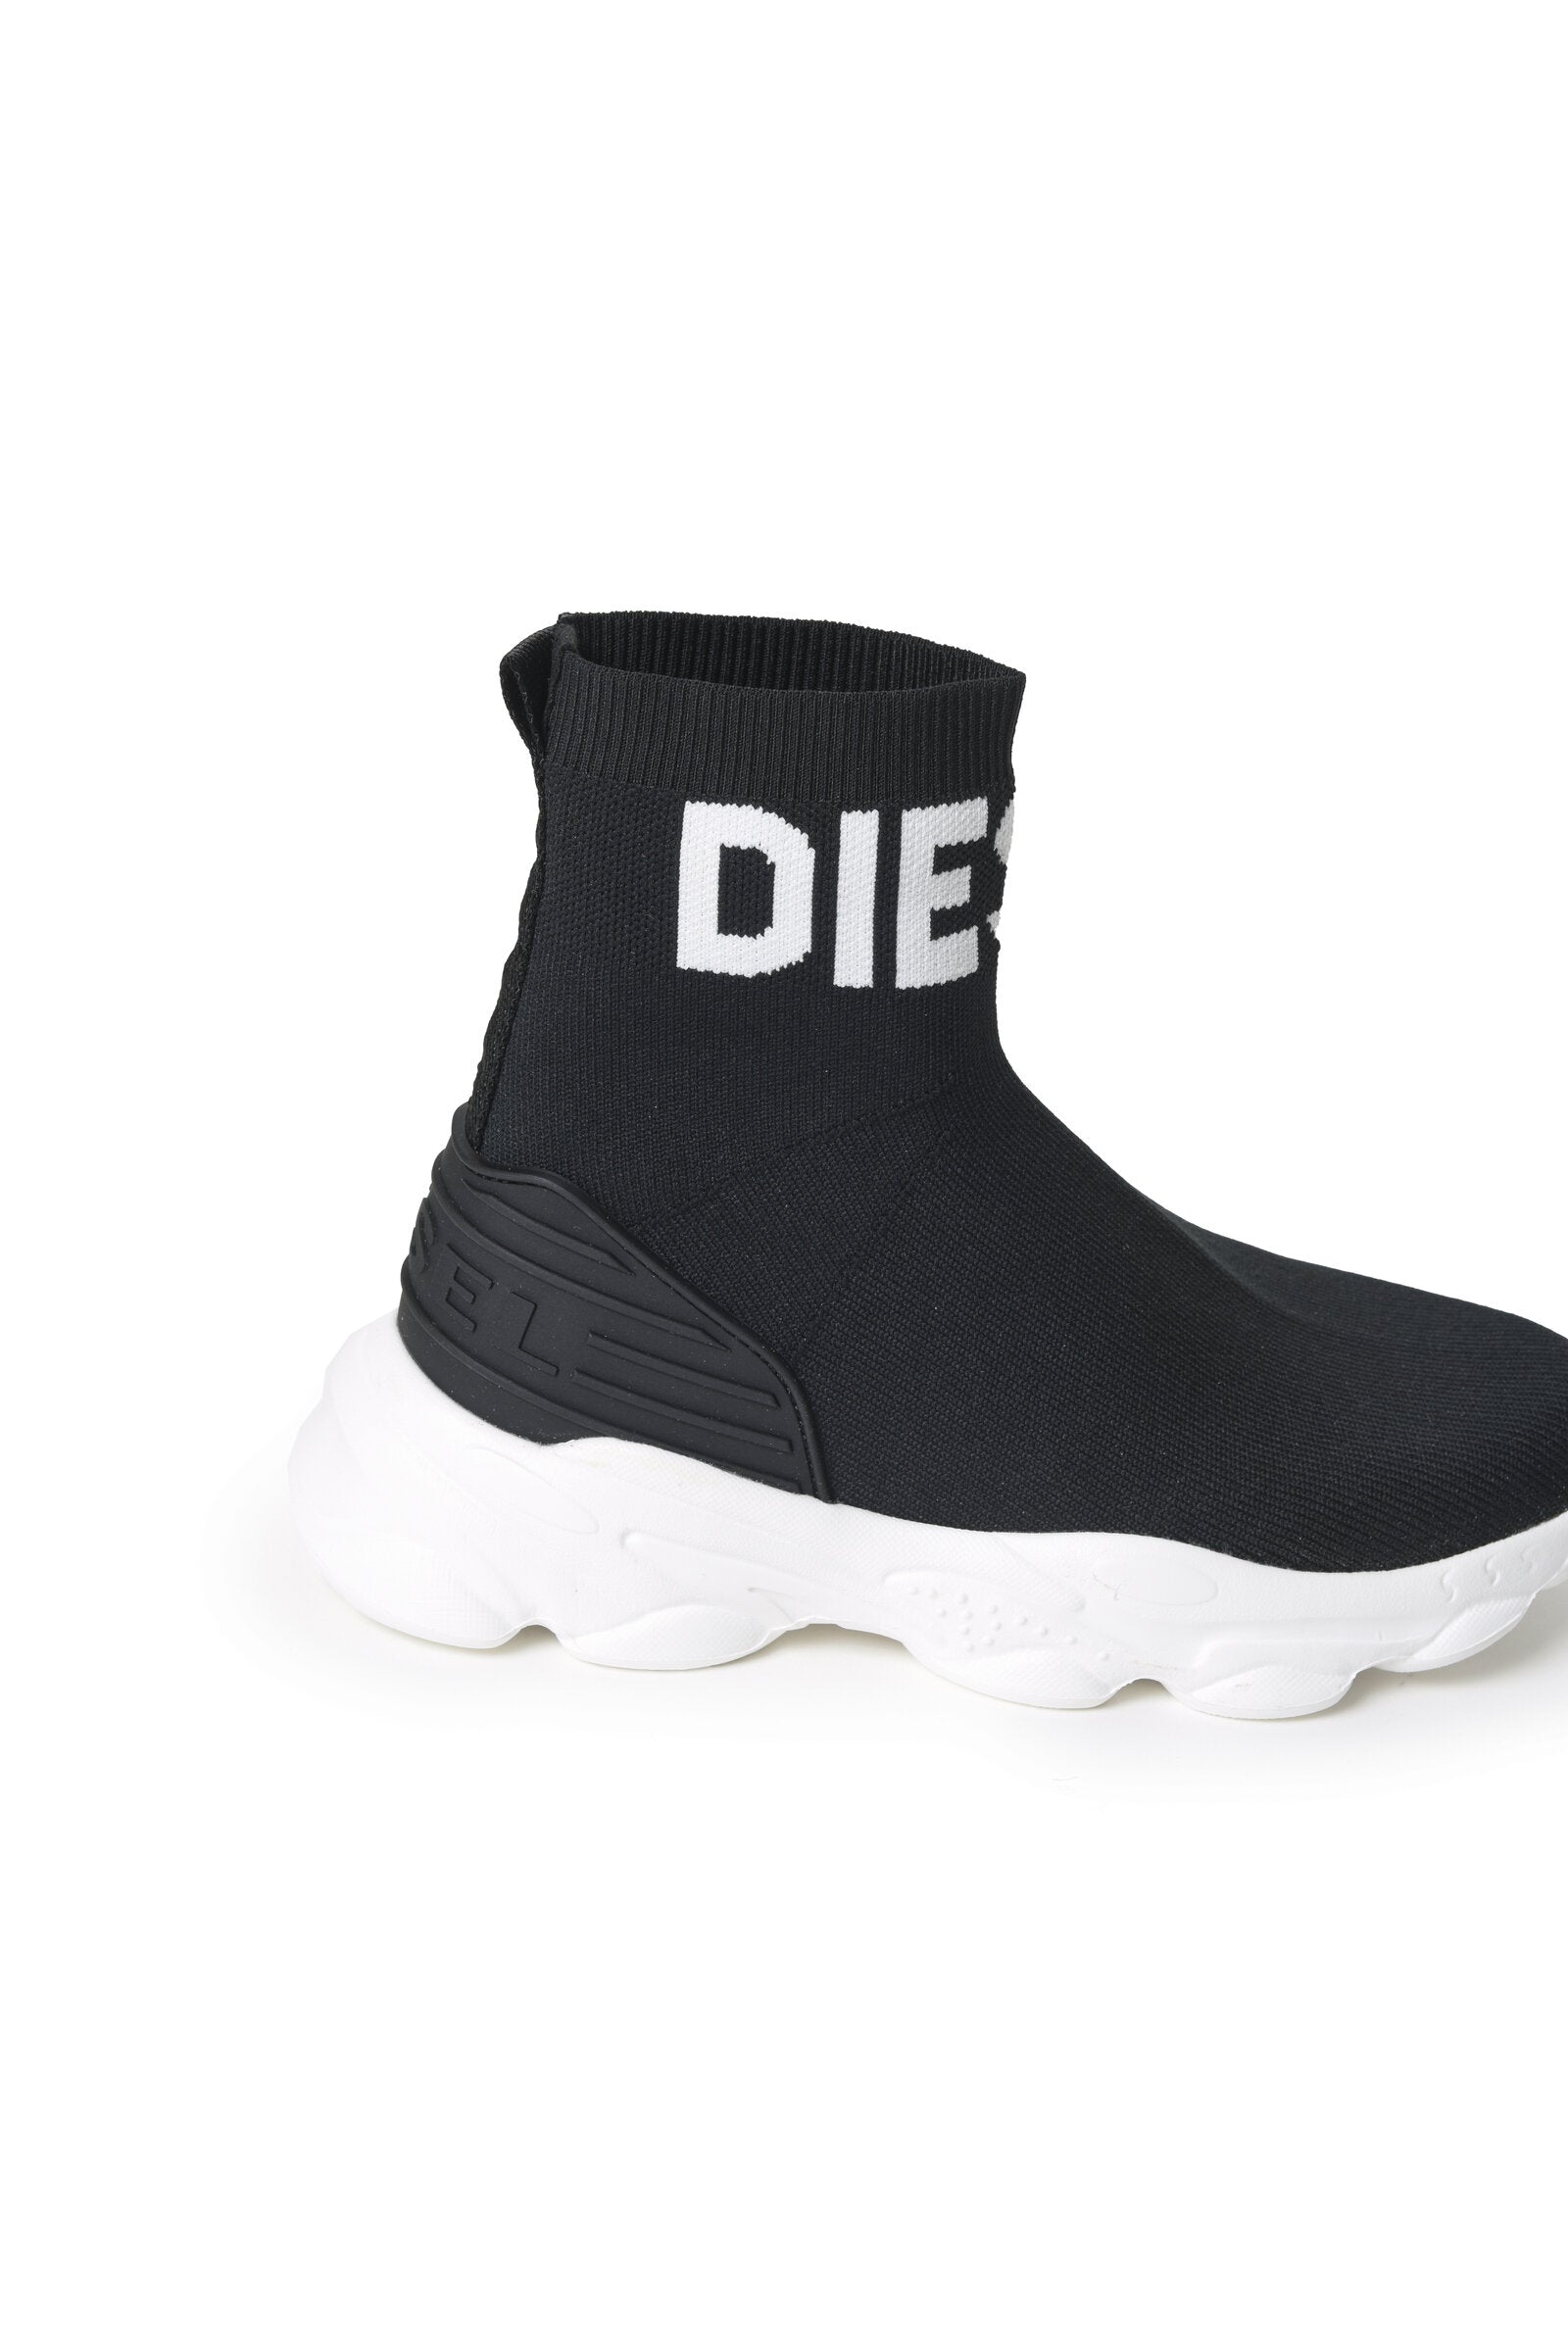 Zapatillas calcetín altas Serendipity negras con logo Diesel blanco para niños | Brave Kid